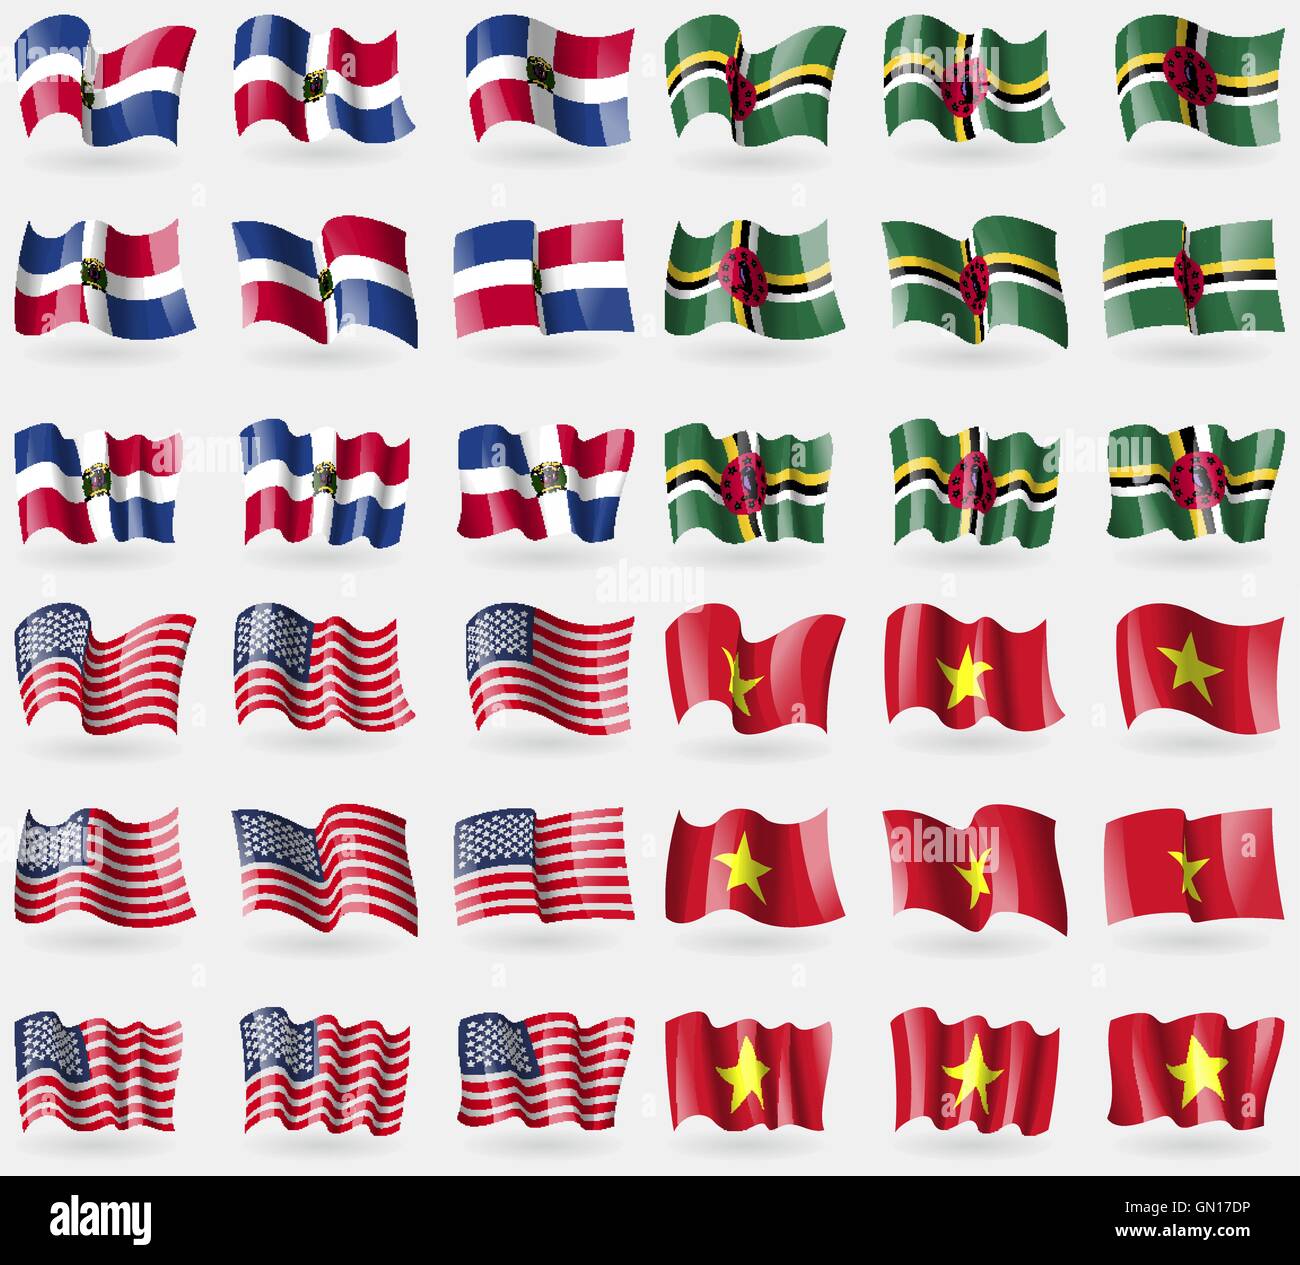 République dominicaine, la Dominique, USA, Vietnam. Ensemble de 36 drapeaux des pays du monde. Vector Illustration de Vecteur